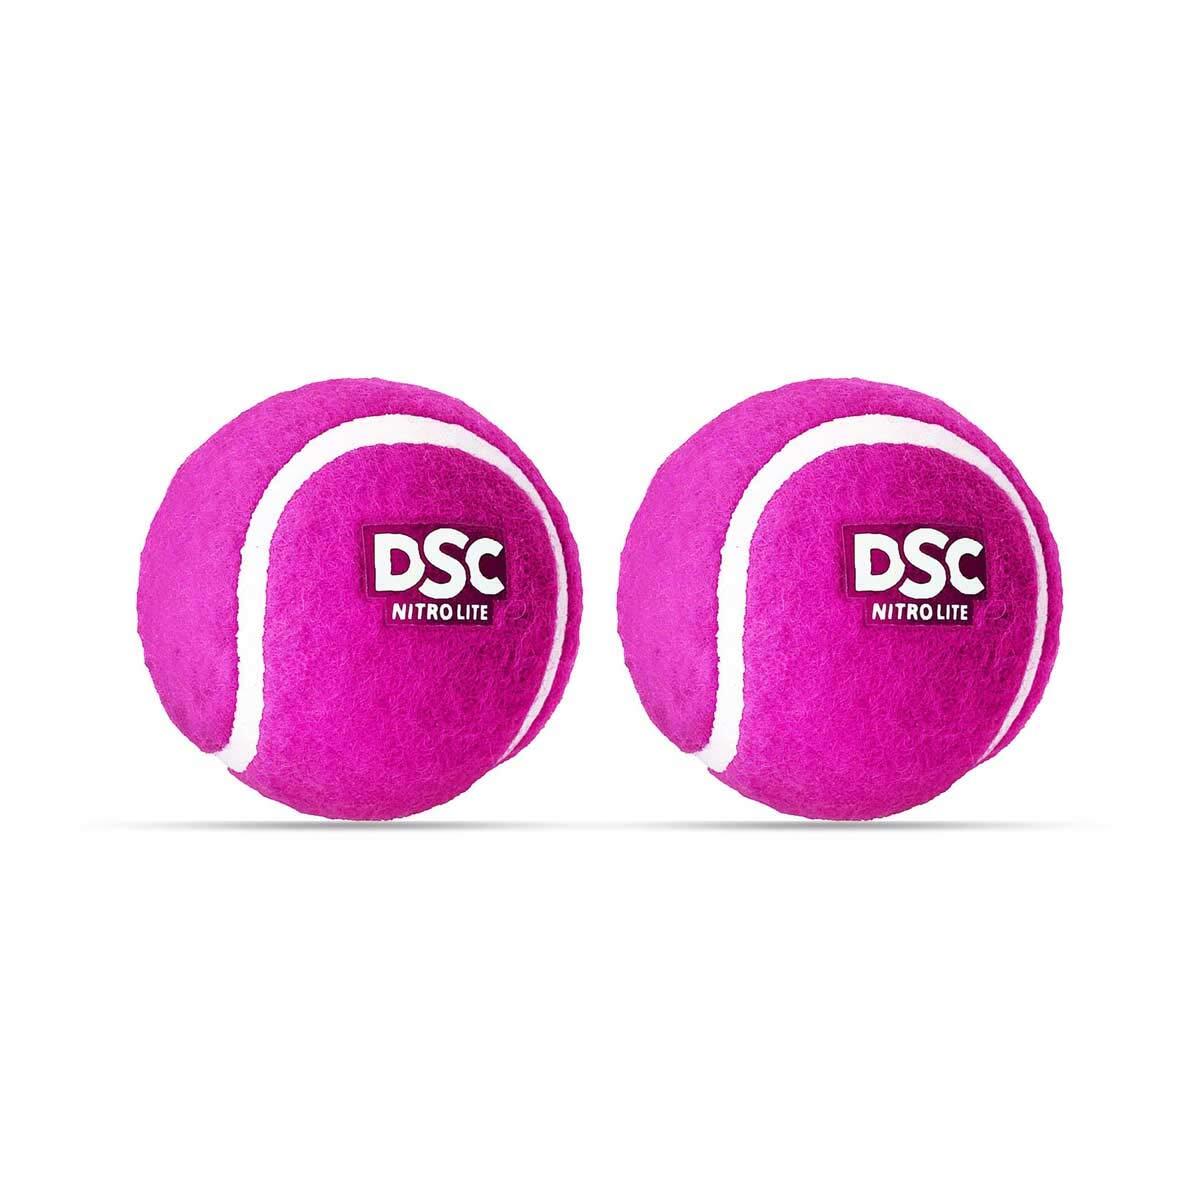 DSC Nitro Light Rubber Tennis Ball- Pack of 2 1/3